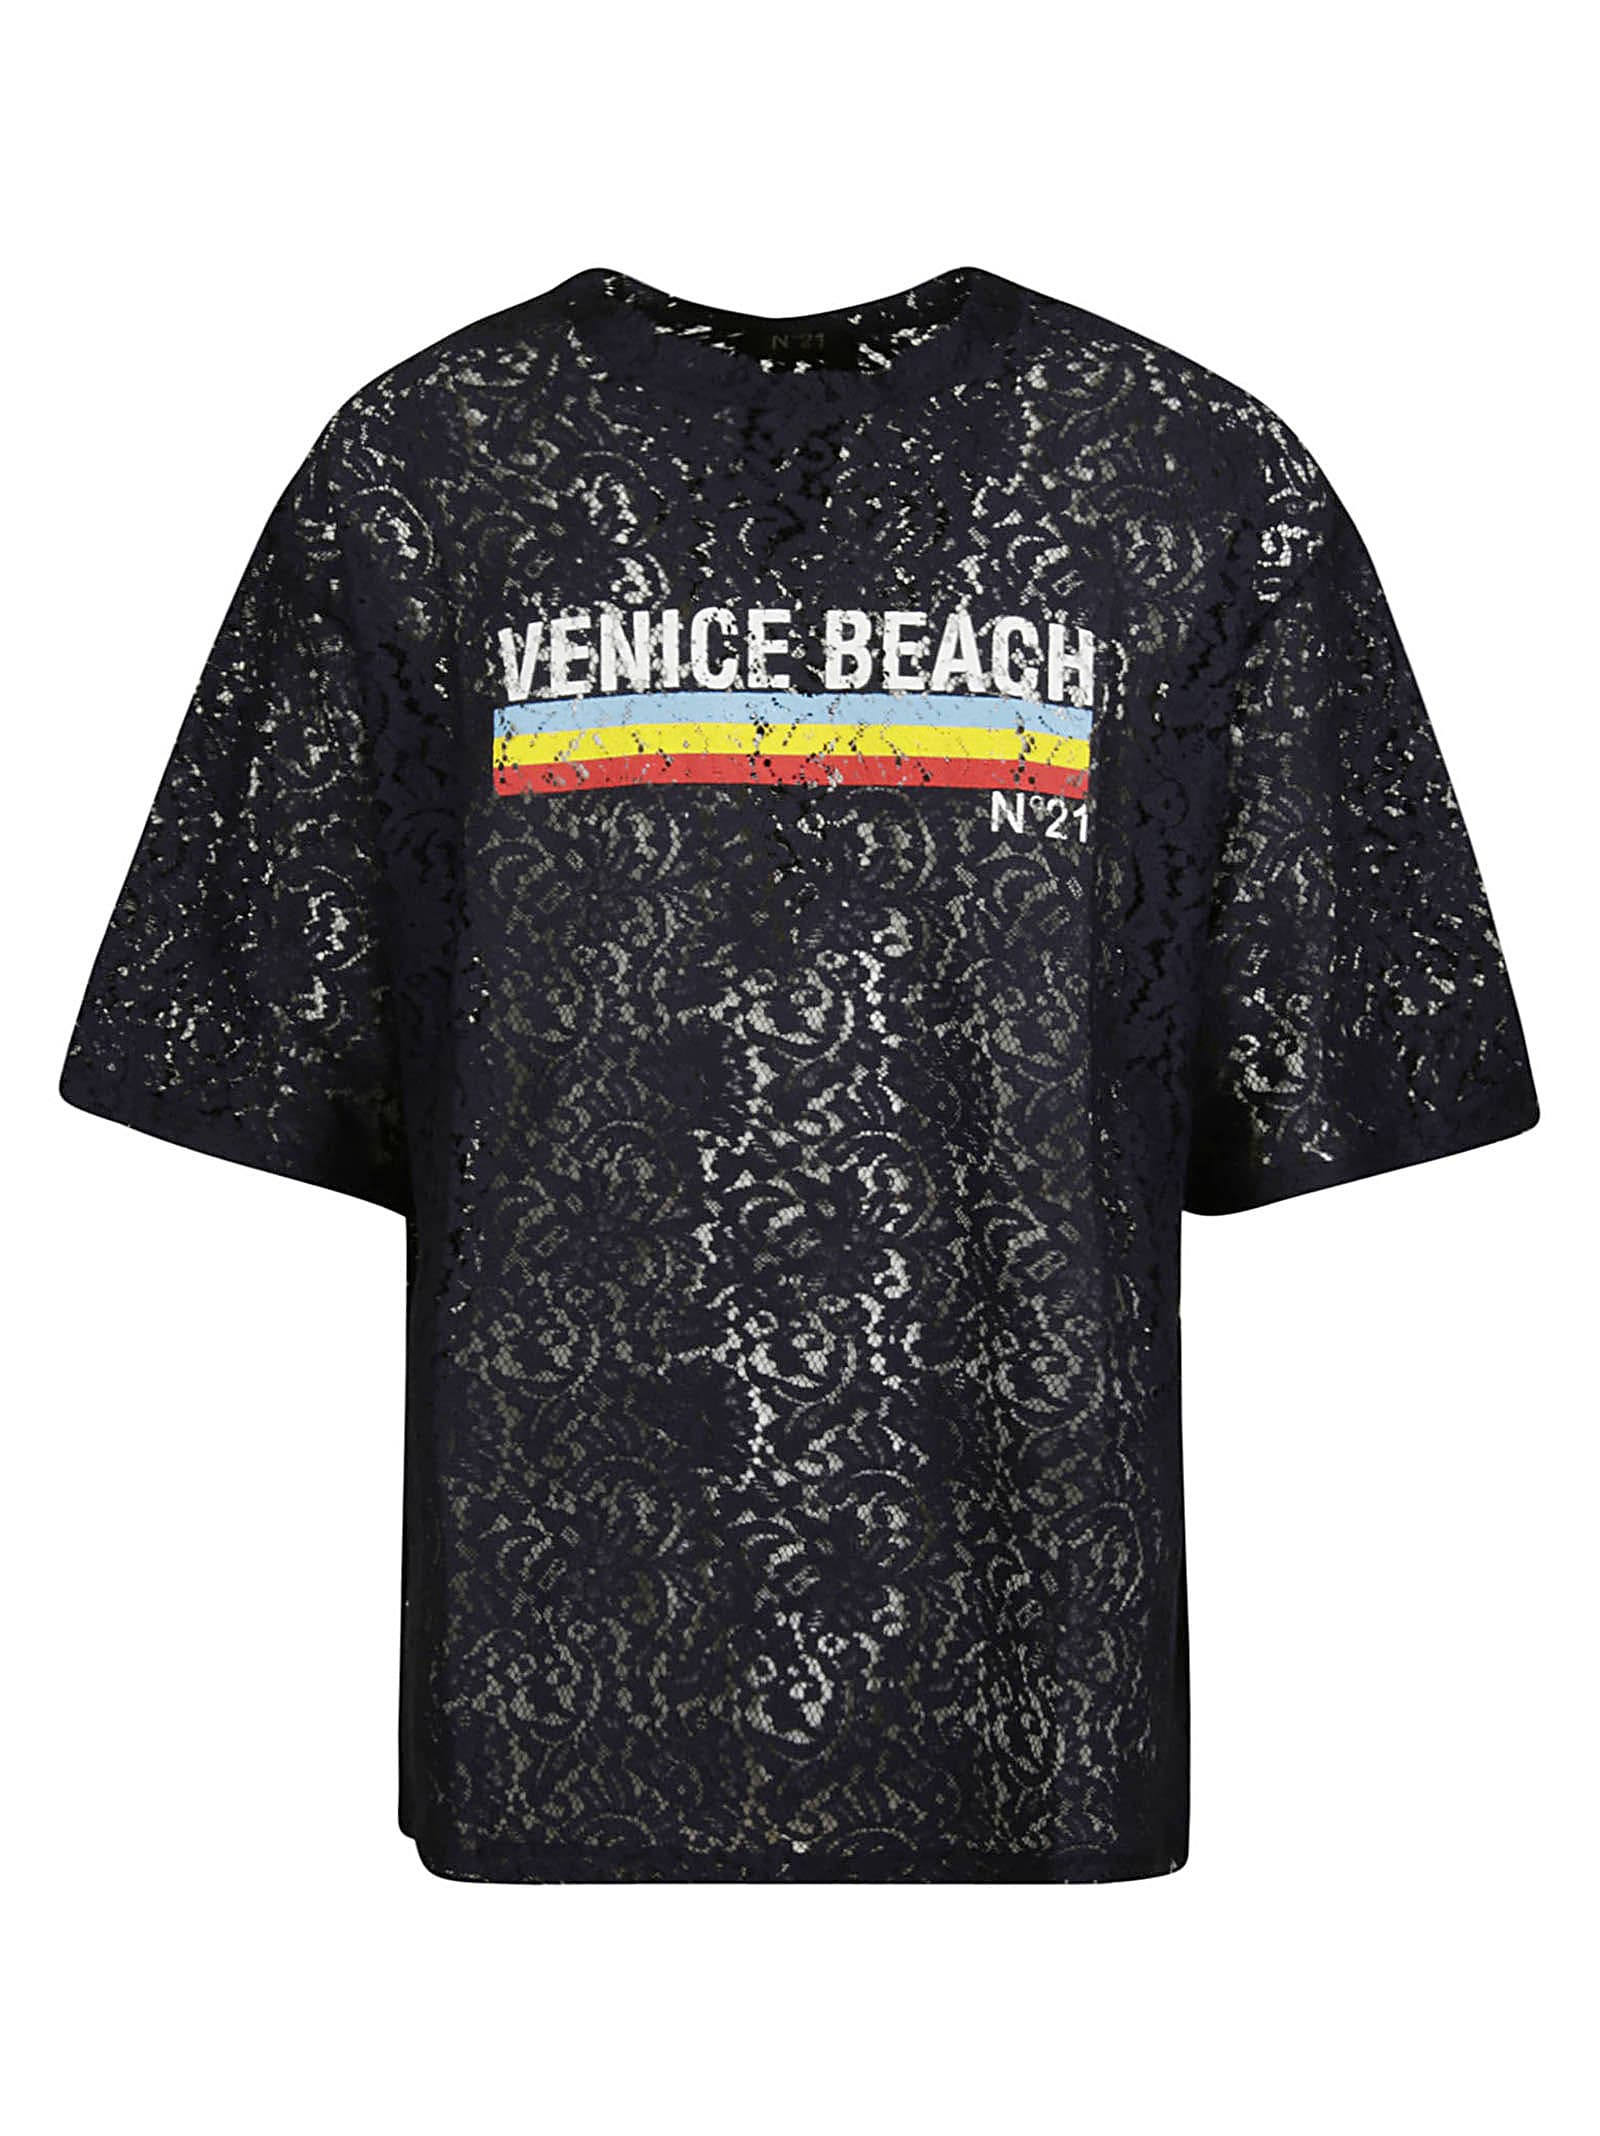 N.21 Venice Beach T-shirt